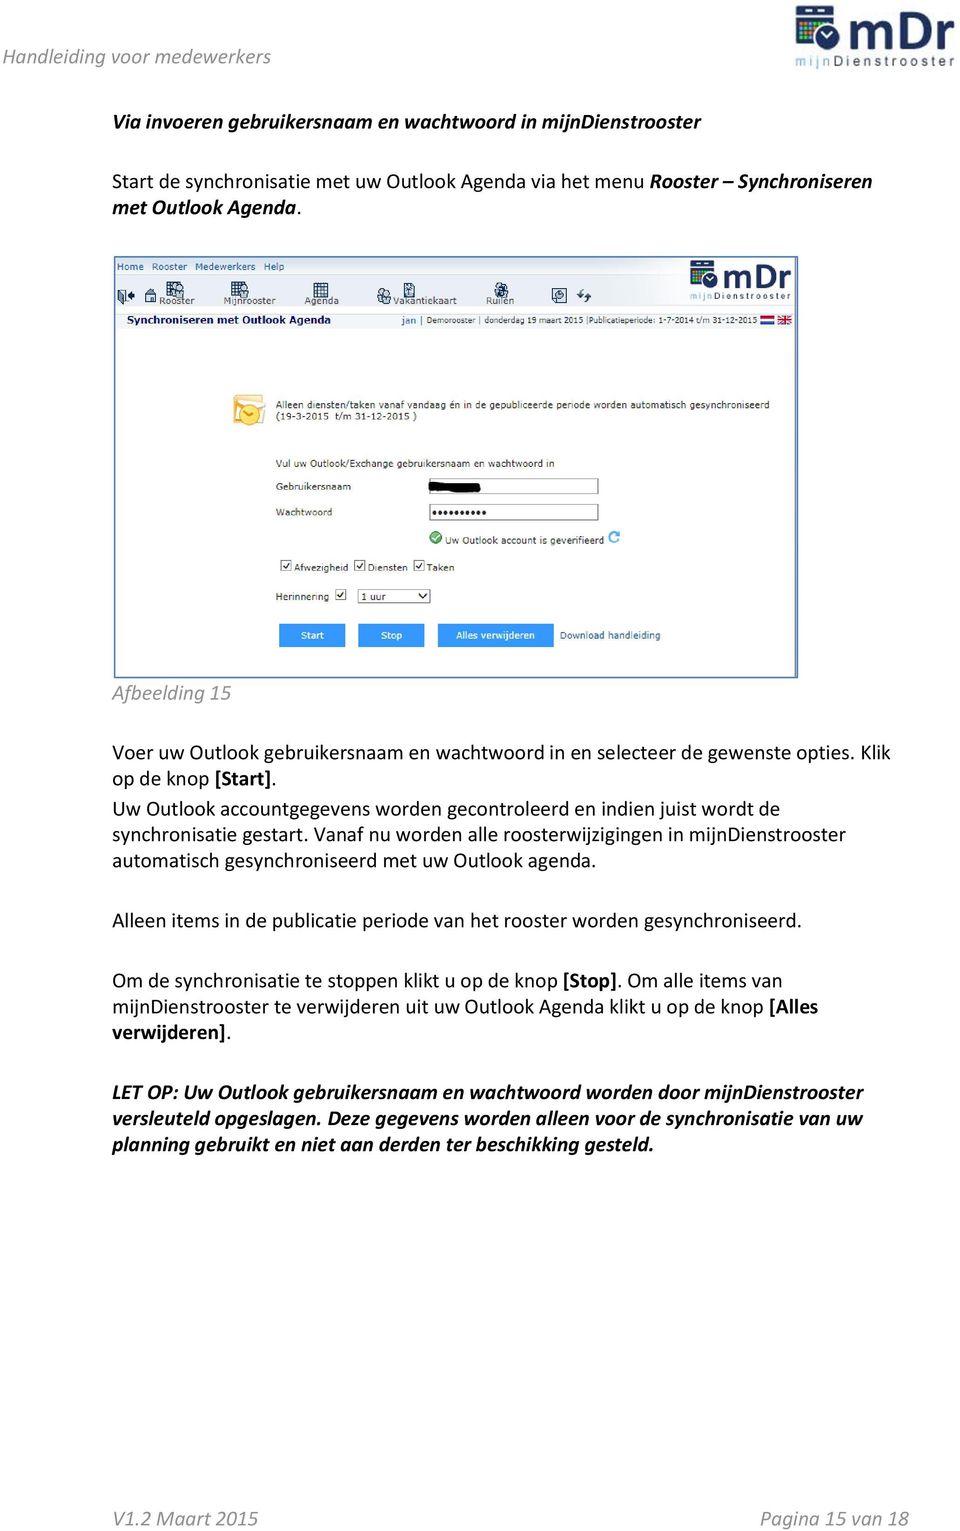 Uw Outlook accountgegevens worden gecontroleerd en indien juist wordt de synchronisatie gestart.